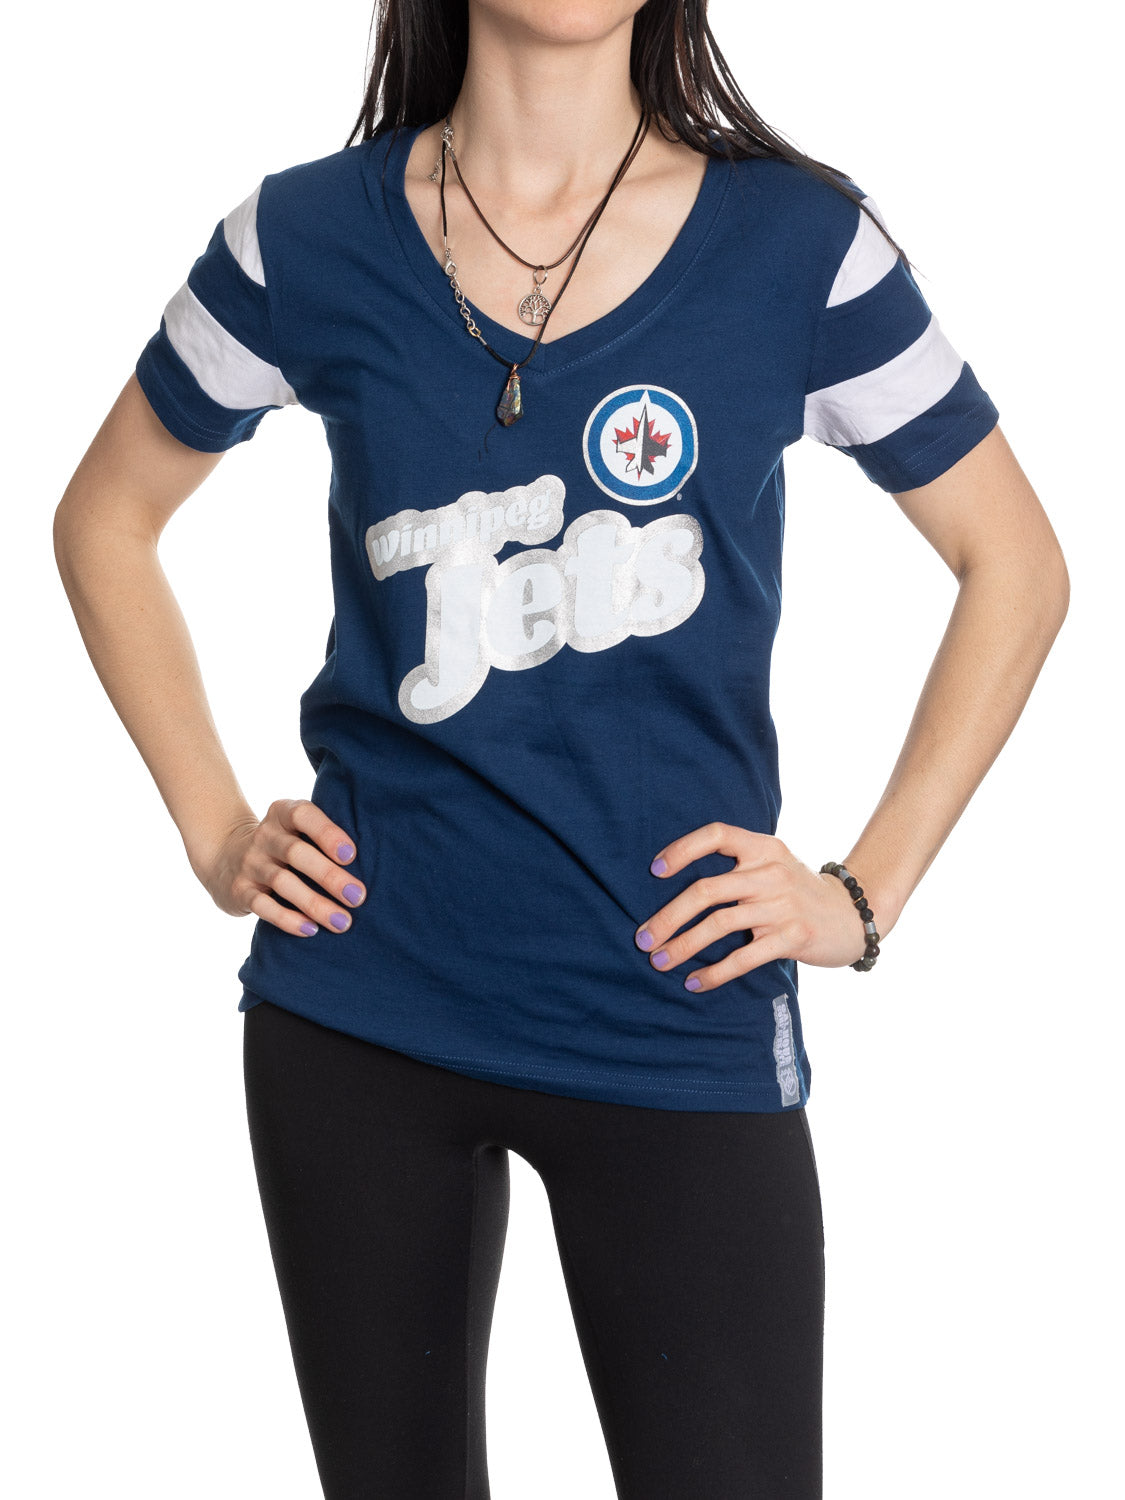 Winnipeg Jets Women's Retro Varsity V-Neck T-Shirt